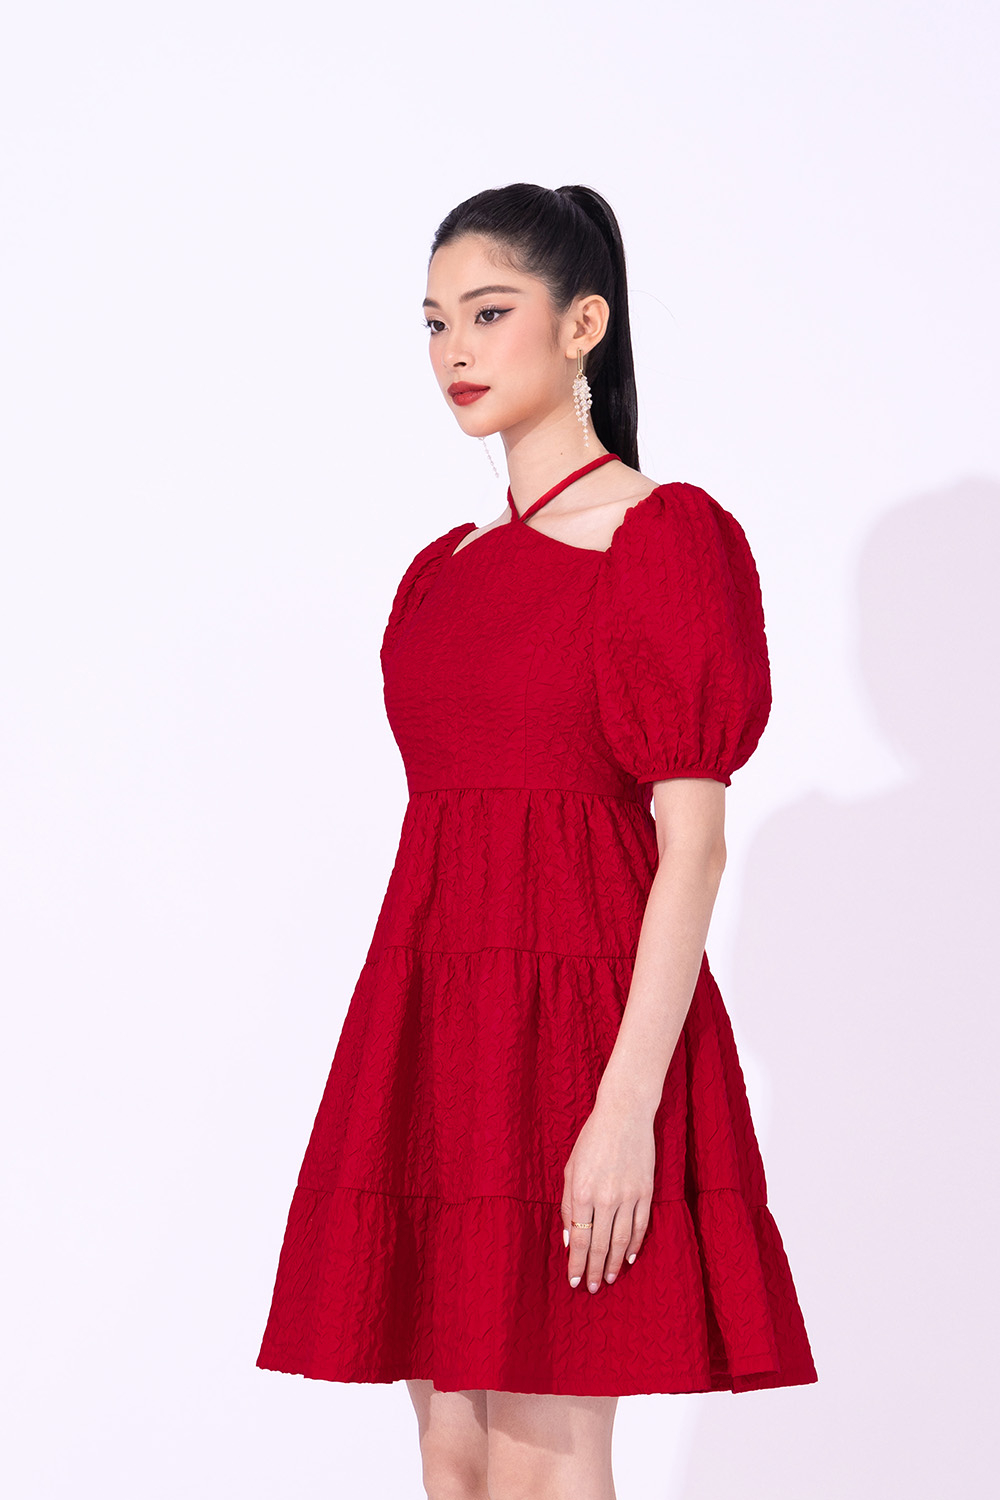 Váy Xốp Trễ Vai, Đầm Cúp Ngực Tay Bồng | Shopee Việt Nam